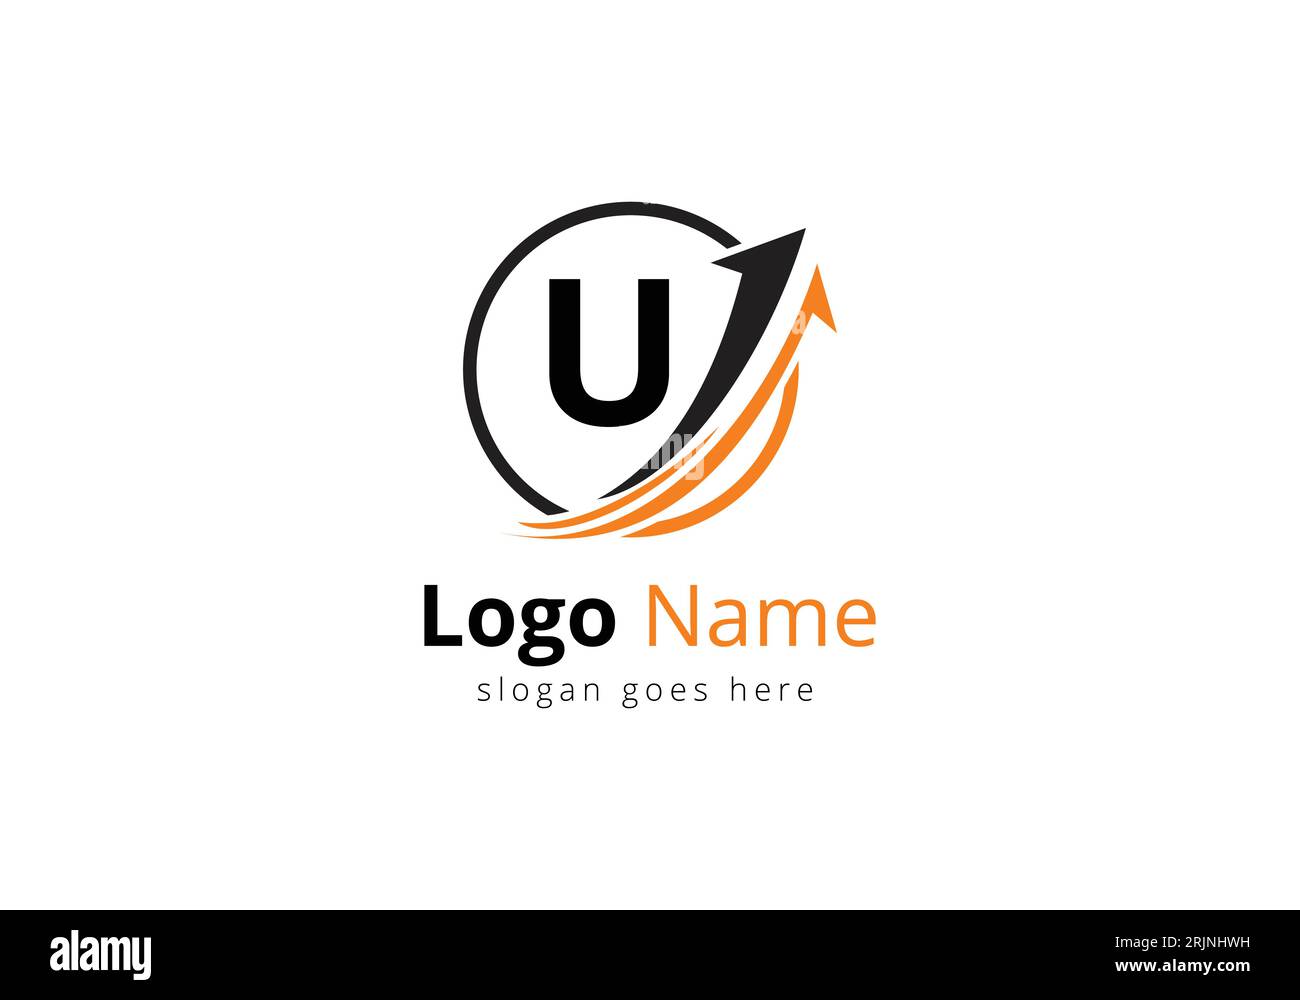 Logo Finance avec concept lettre U. Concept de logo financier ou de réussite. Logo pour l'entreprise comptable et l'identité de l'entreprise Illustration de Vecteur